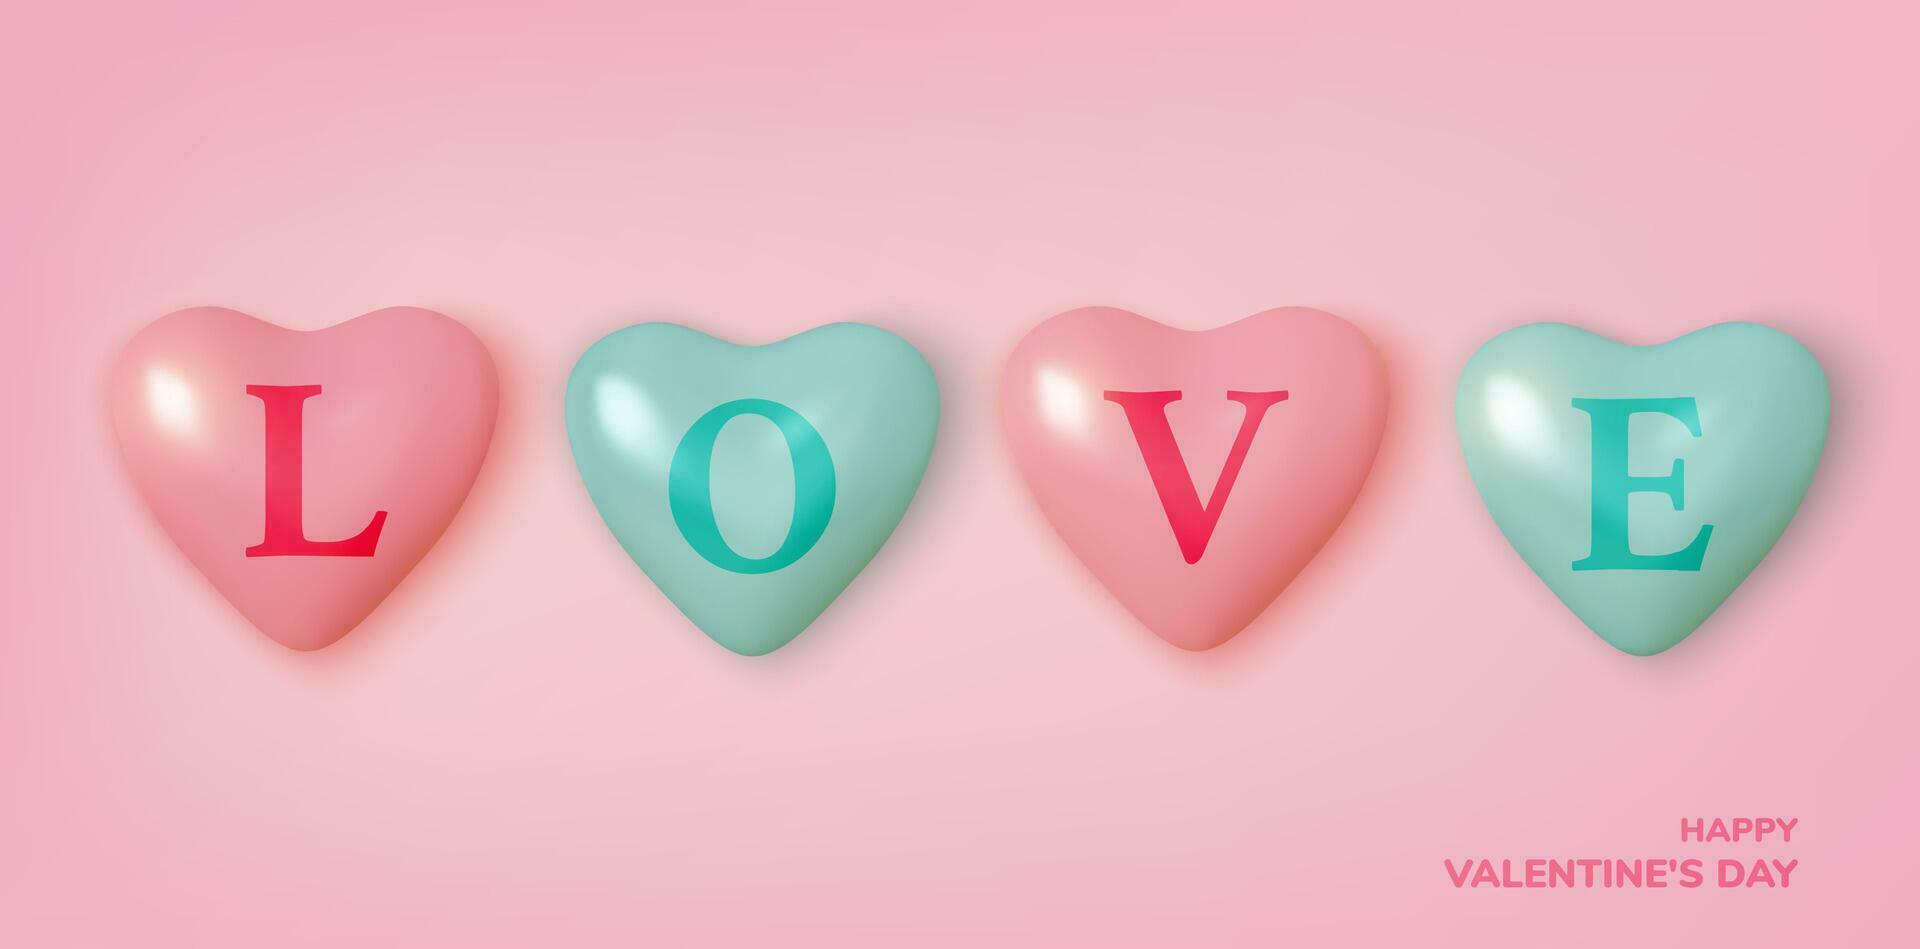 san valentin día saludo tarjeta. realista 3d rosado y azul globos corazones y estrellas. amor y boda. modelo para productos, web pancartas y folletos vector ilustración